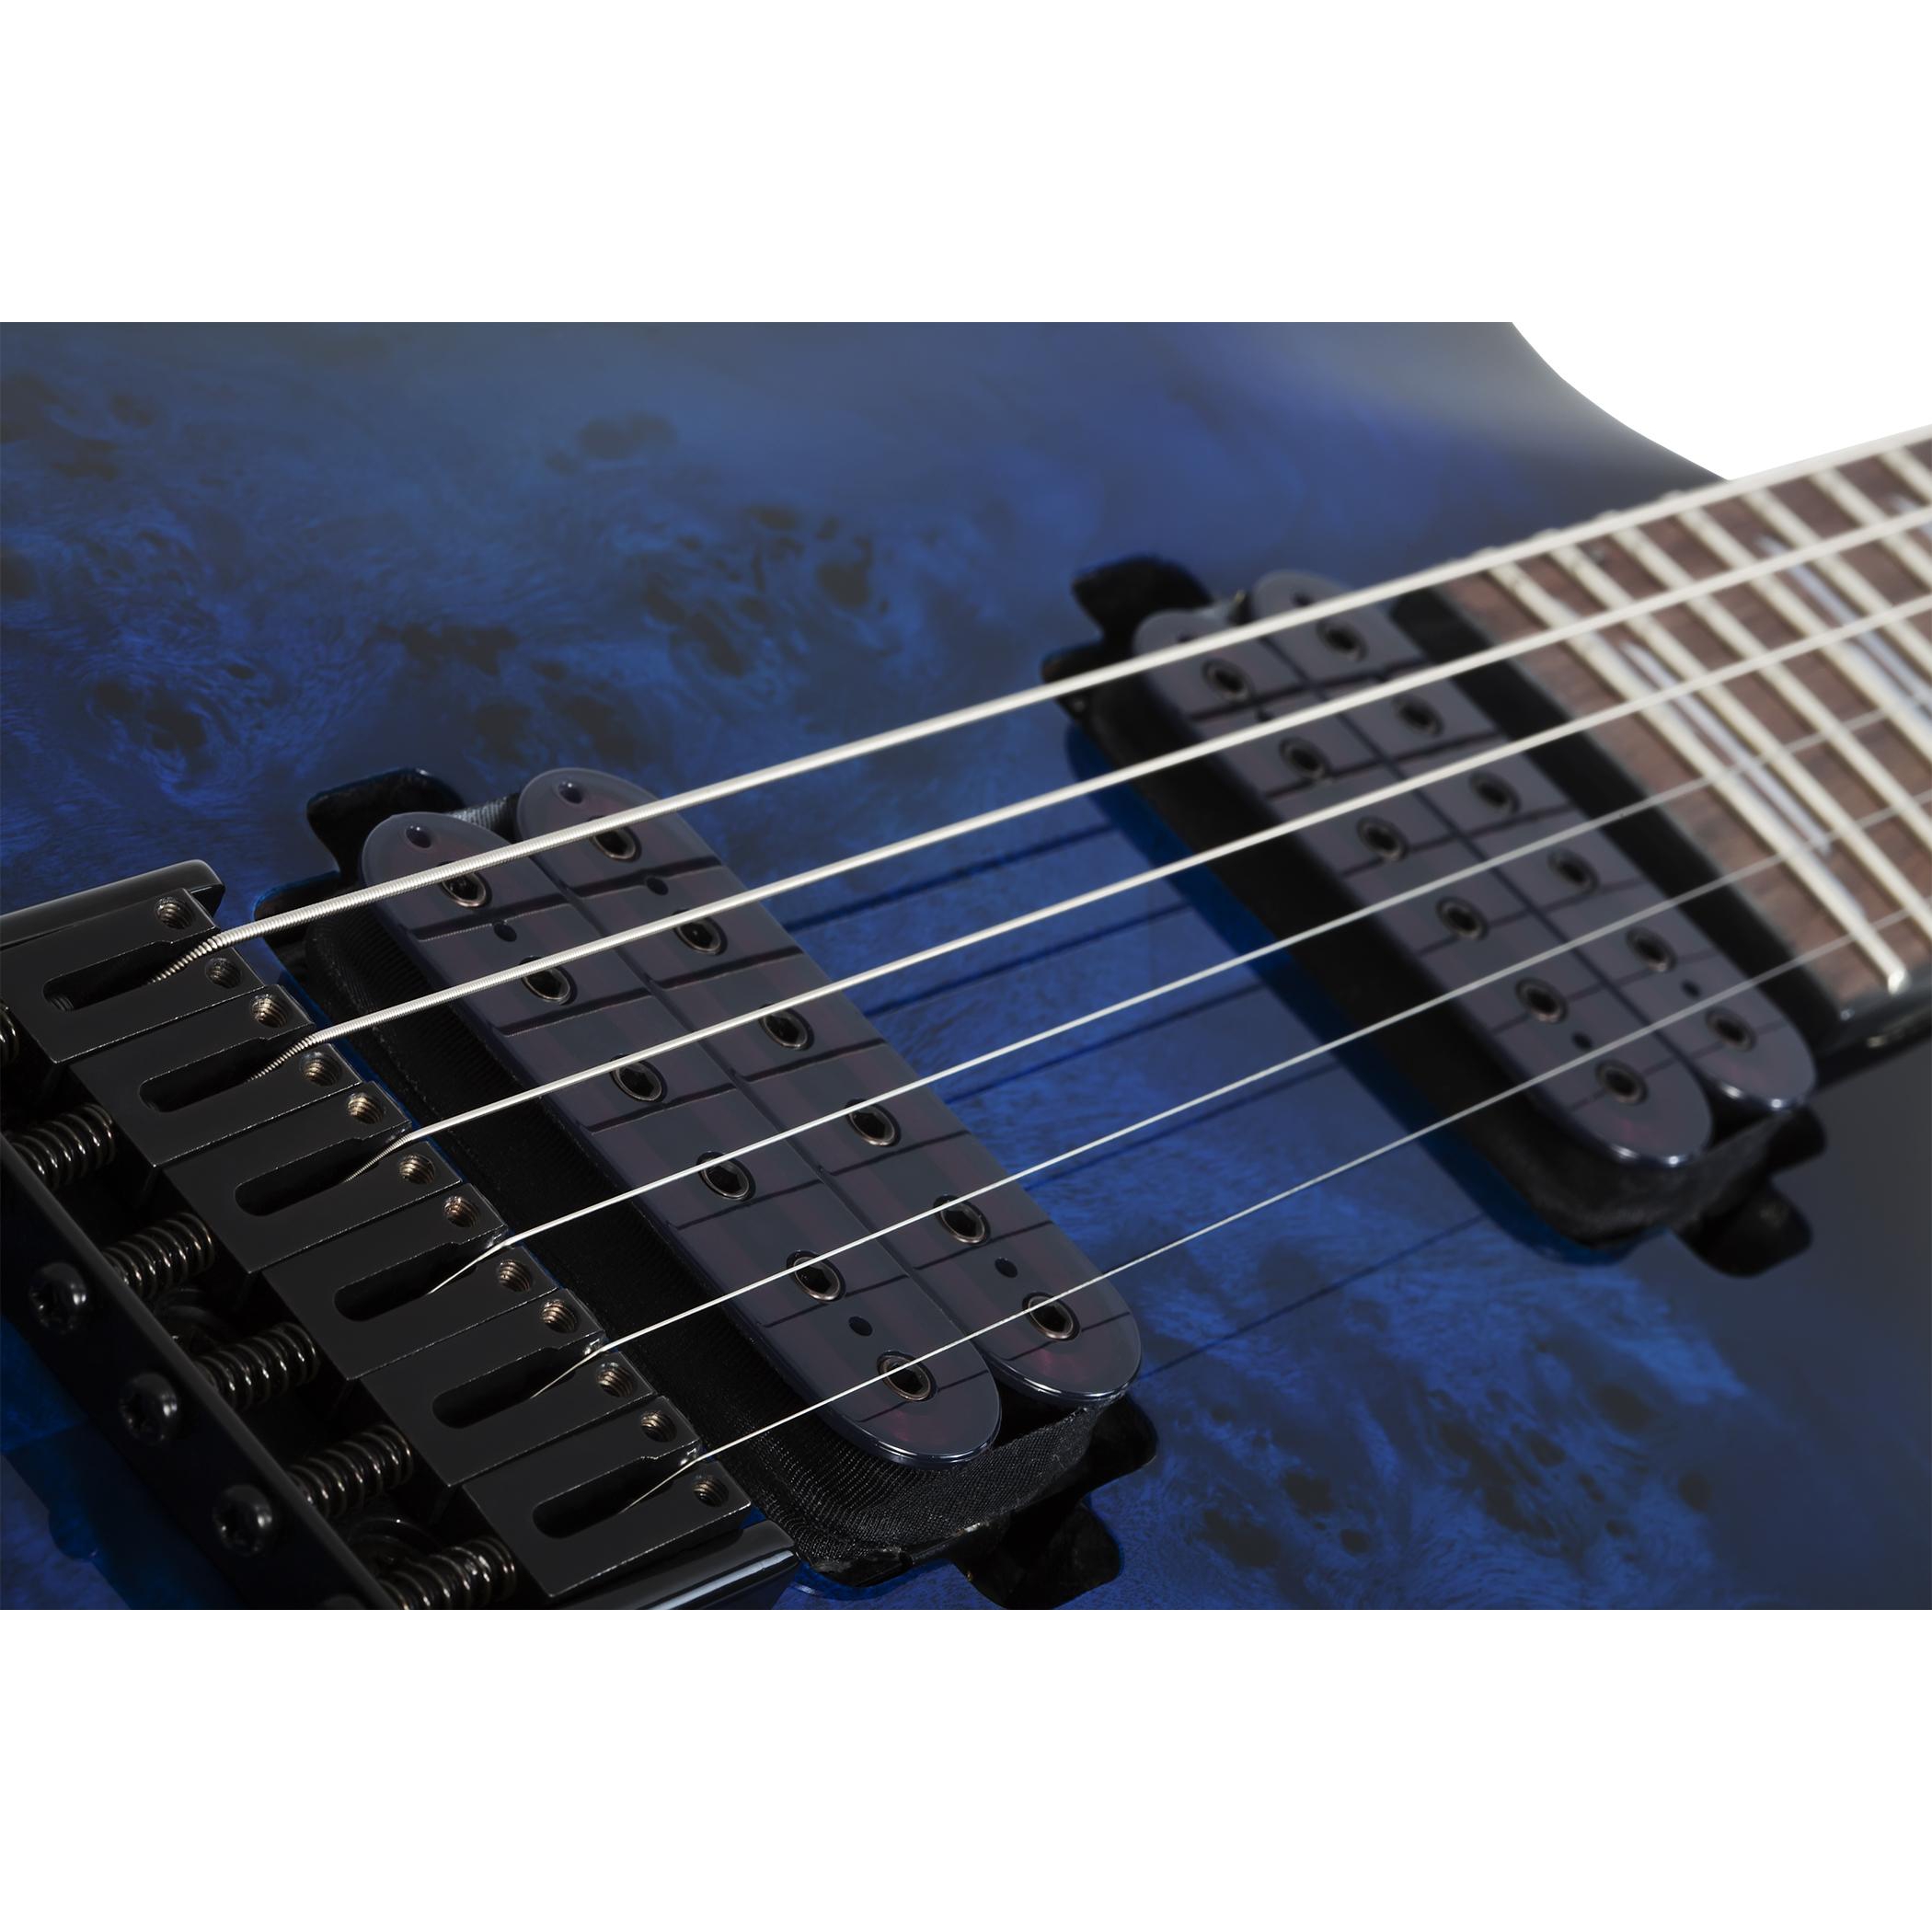 Schecter Omen Elite-6 Elektro Gitar (See Thru Blue Burst)